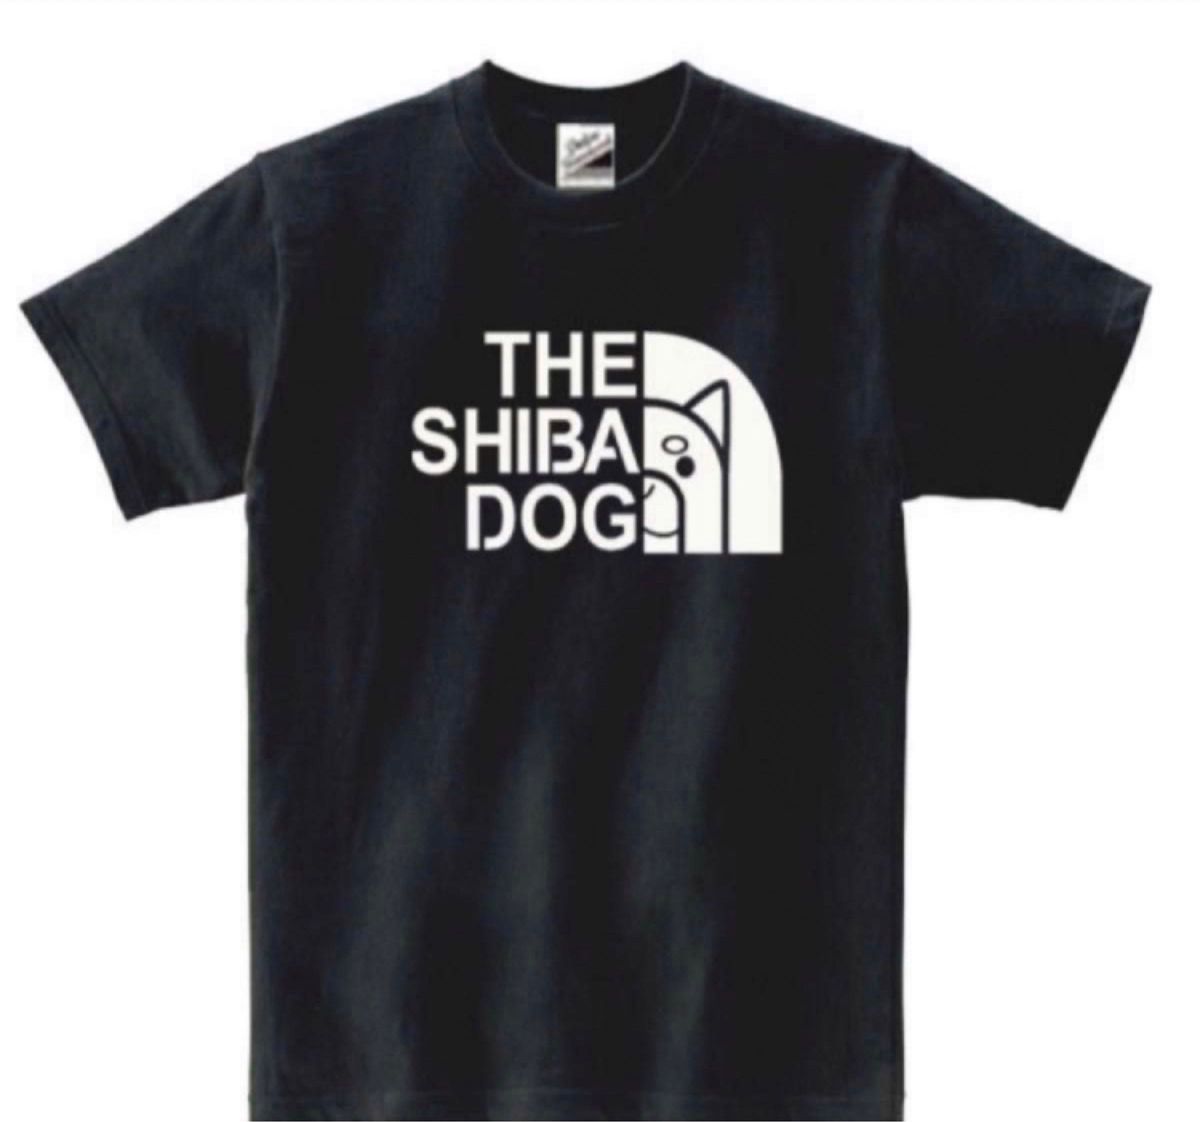 【SALEパロディ黒L】5ozシバドッグ柴犬Tシャツ面白いおもしろうけるネタプレゼント送料無料・新品1500円